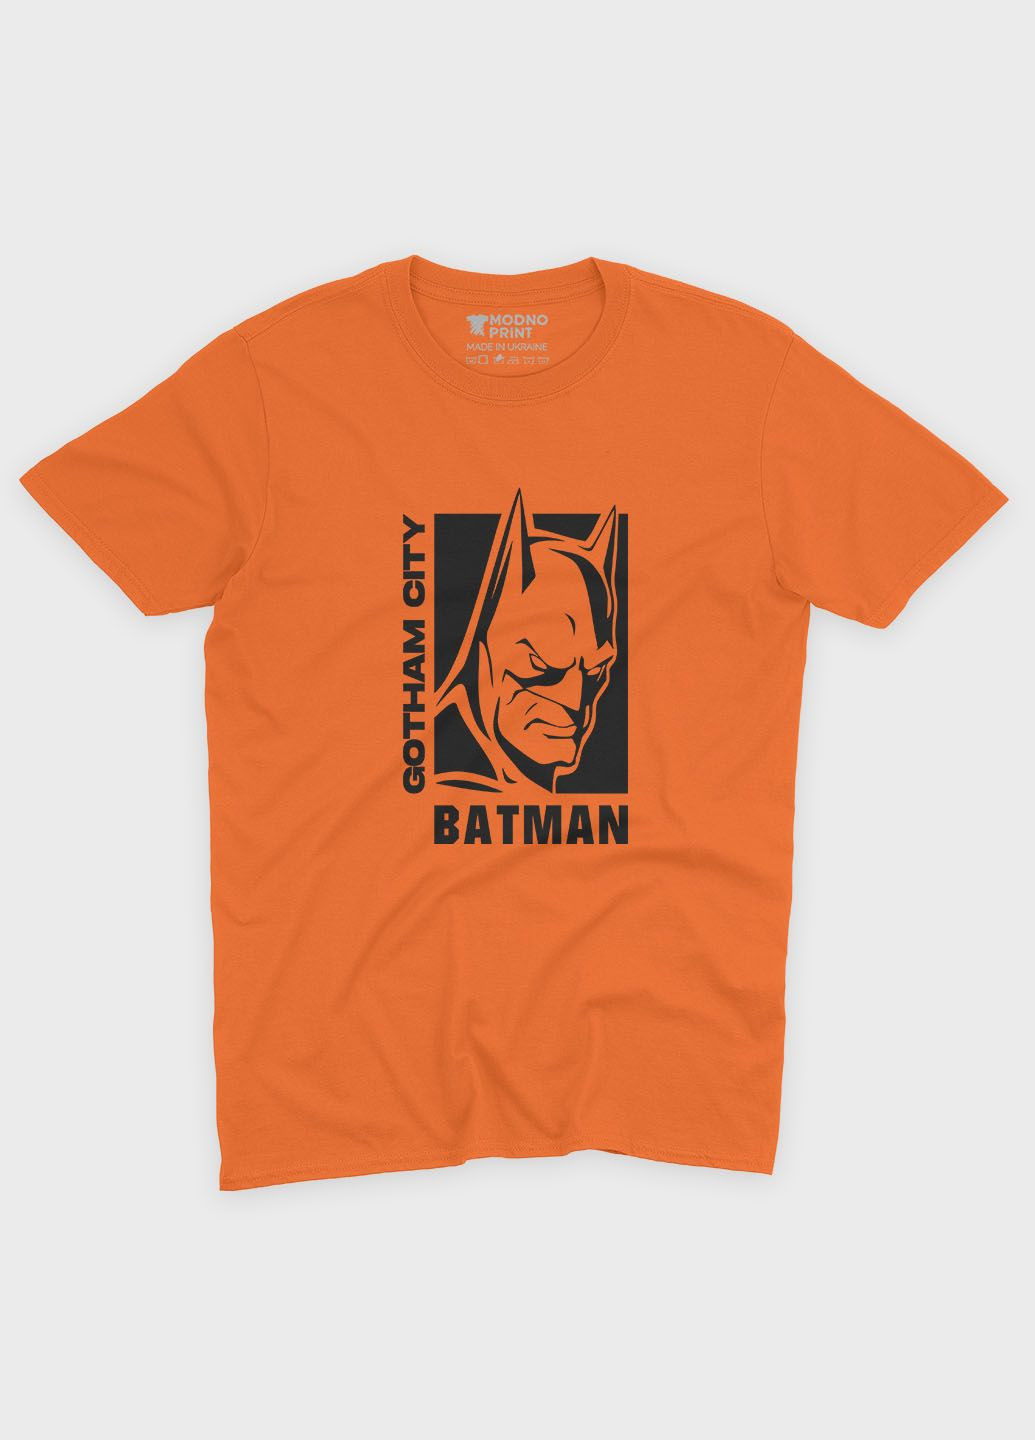 Оранжевая демисезонная футболка для мальчика с принтом супергероя - бэтмен (ts001-1-ora-006-003-008-b) Modno